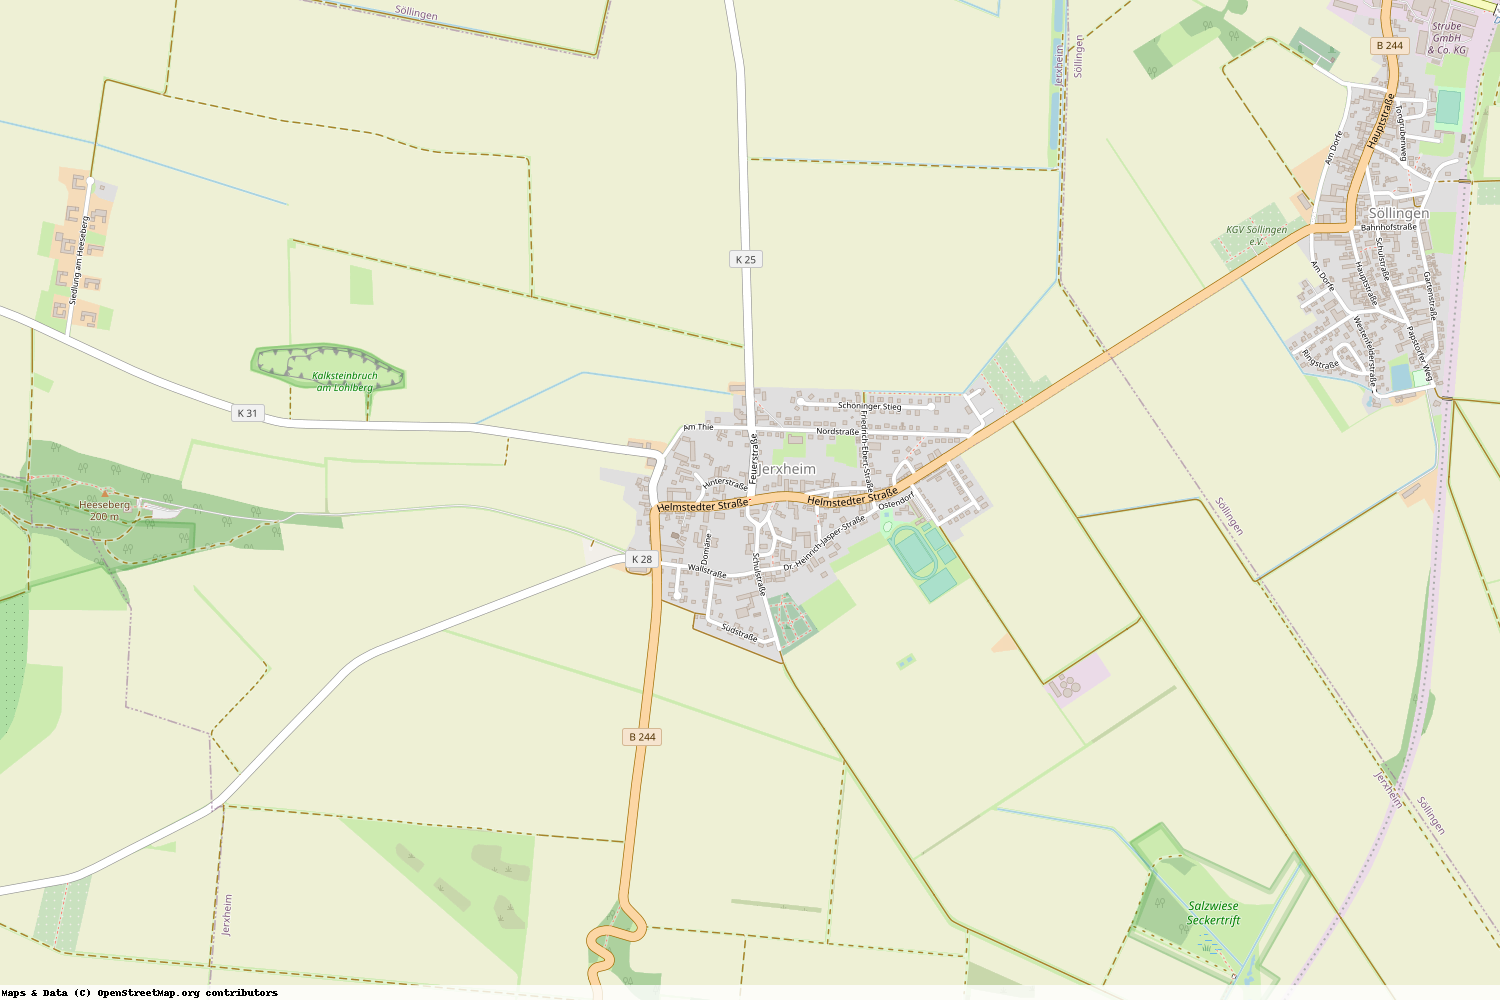 Ist gerade Stromausfall in Niedersachsen - Helmstedt - Jerxheim?